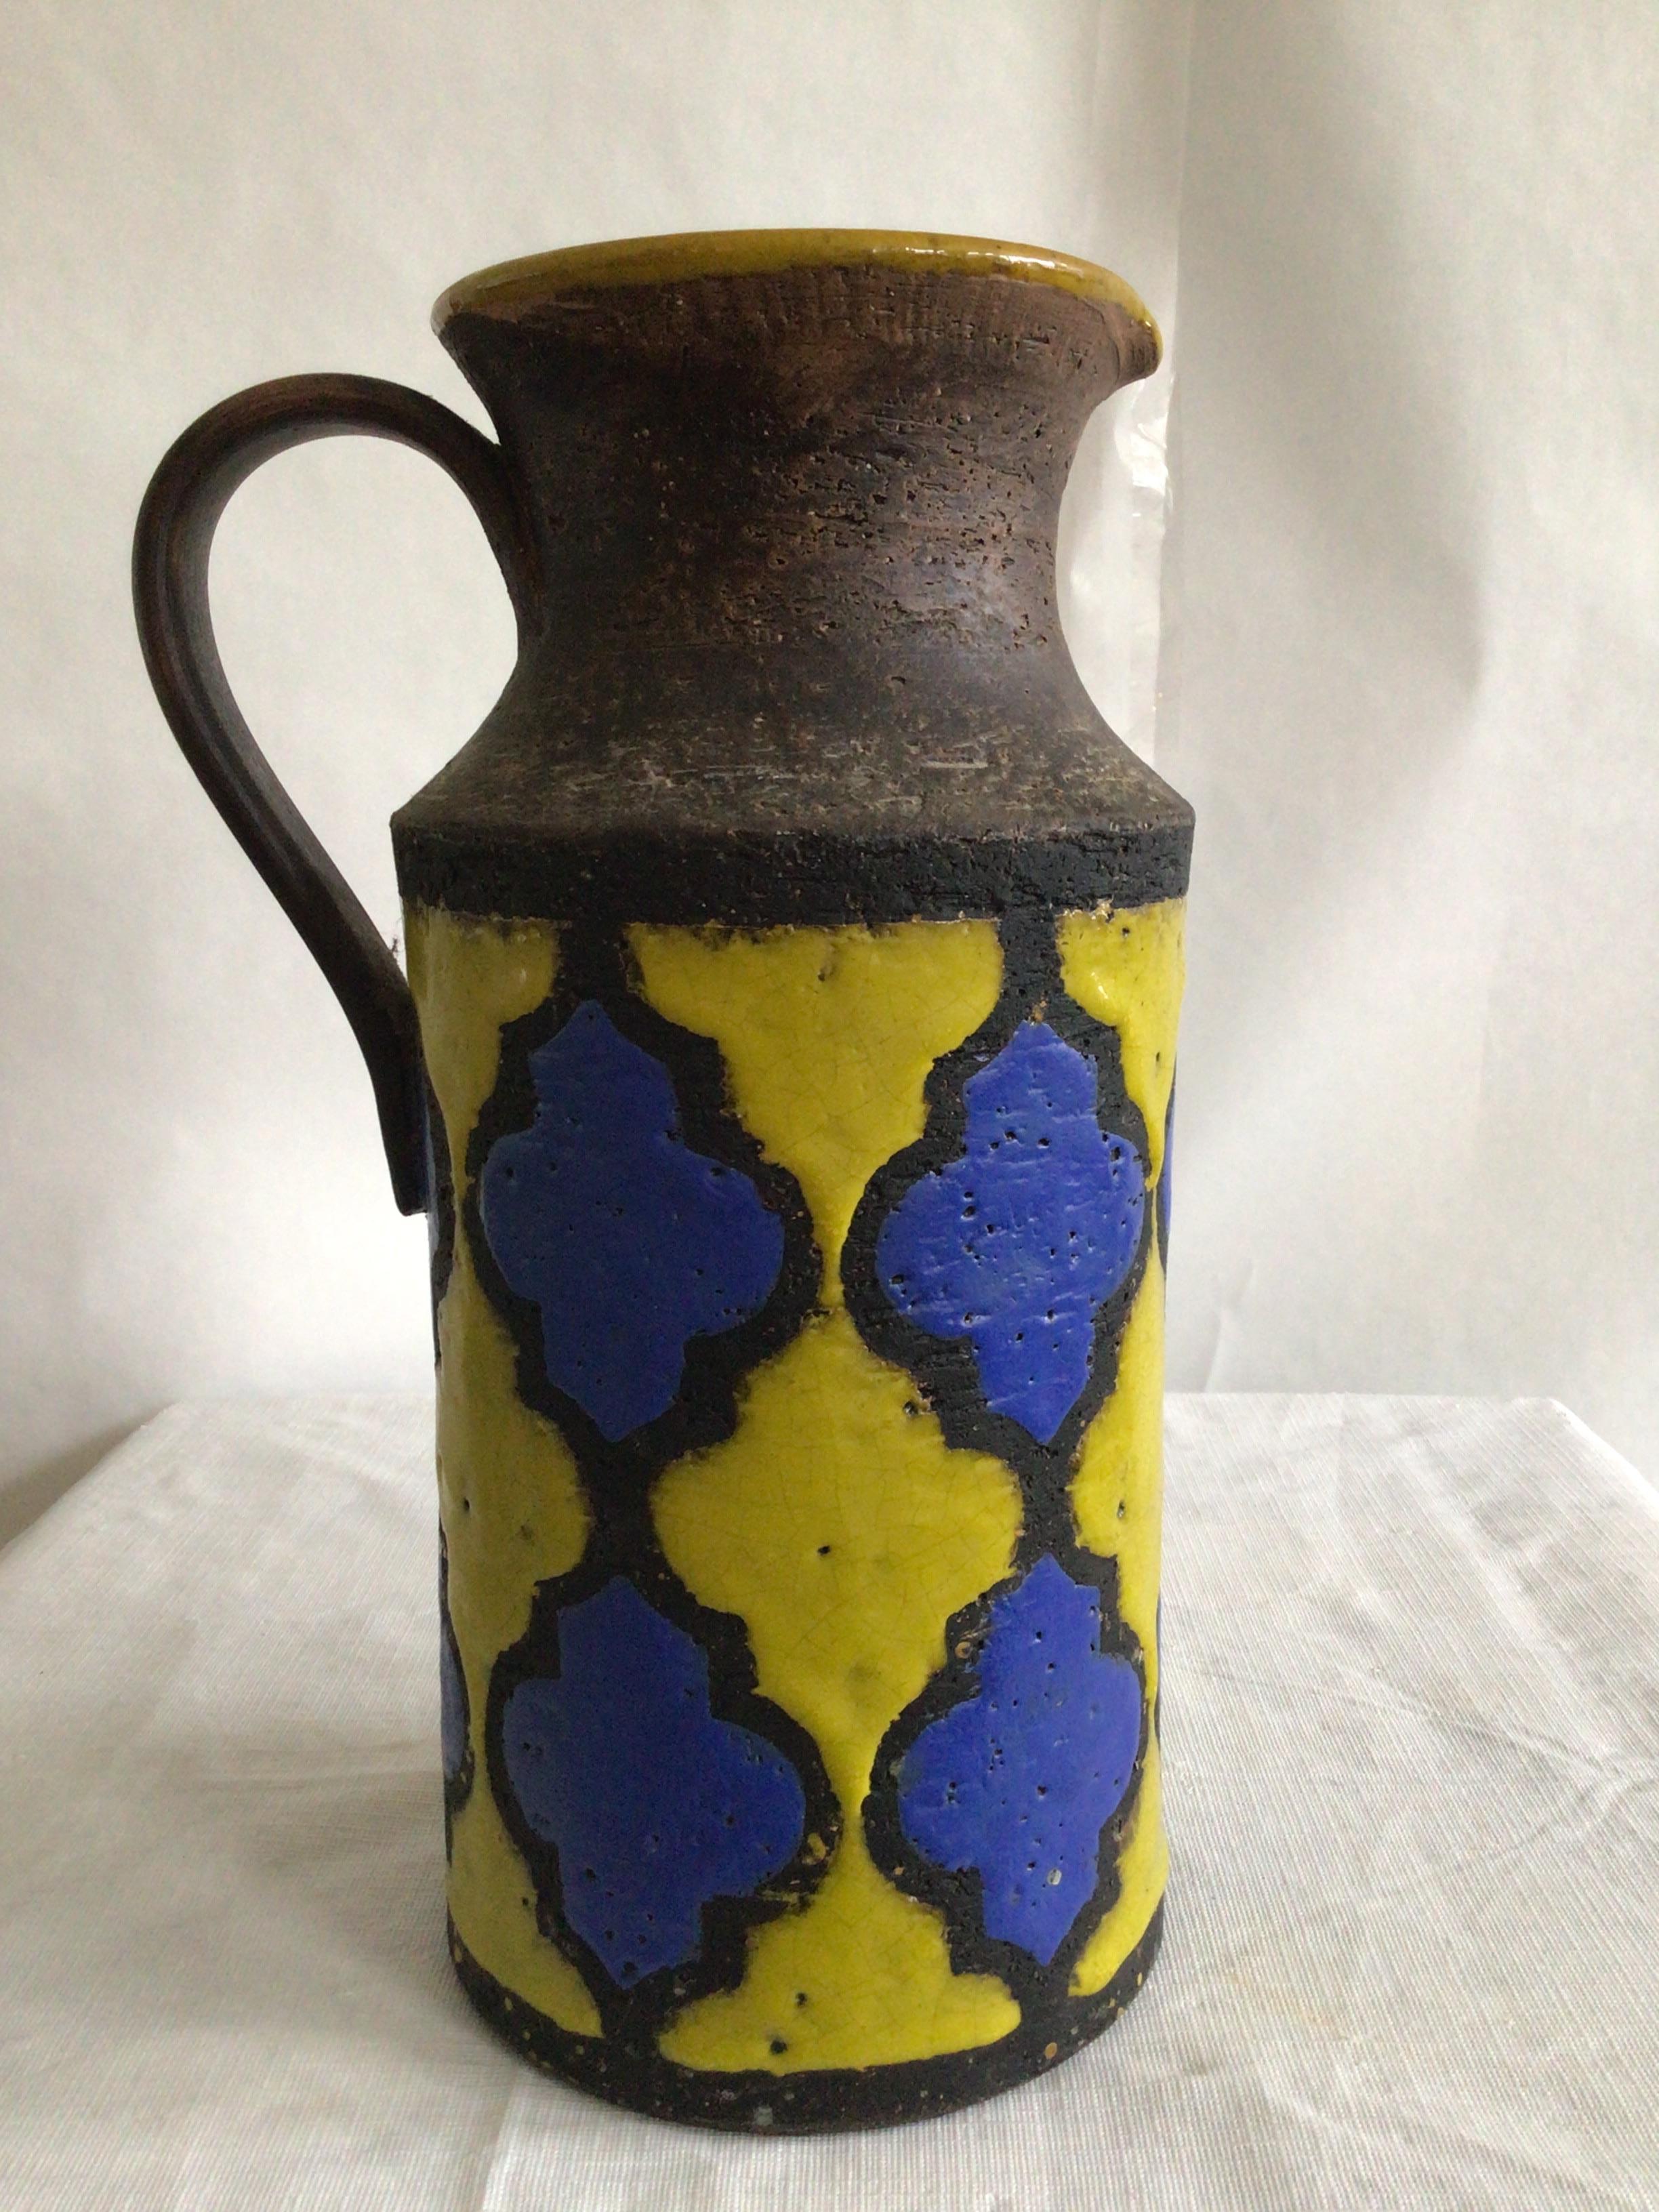 Pichet/jupe bicolore peint en Italie des années 1960
Dans le style d'Aldo Londi pour Bitossi, ce vase est d'un bleu vif et d'un jaune éclatant. Ressemble à des tuiles bicolores 
La décoration donne un aspect de vitrail qui contraste avec les parties